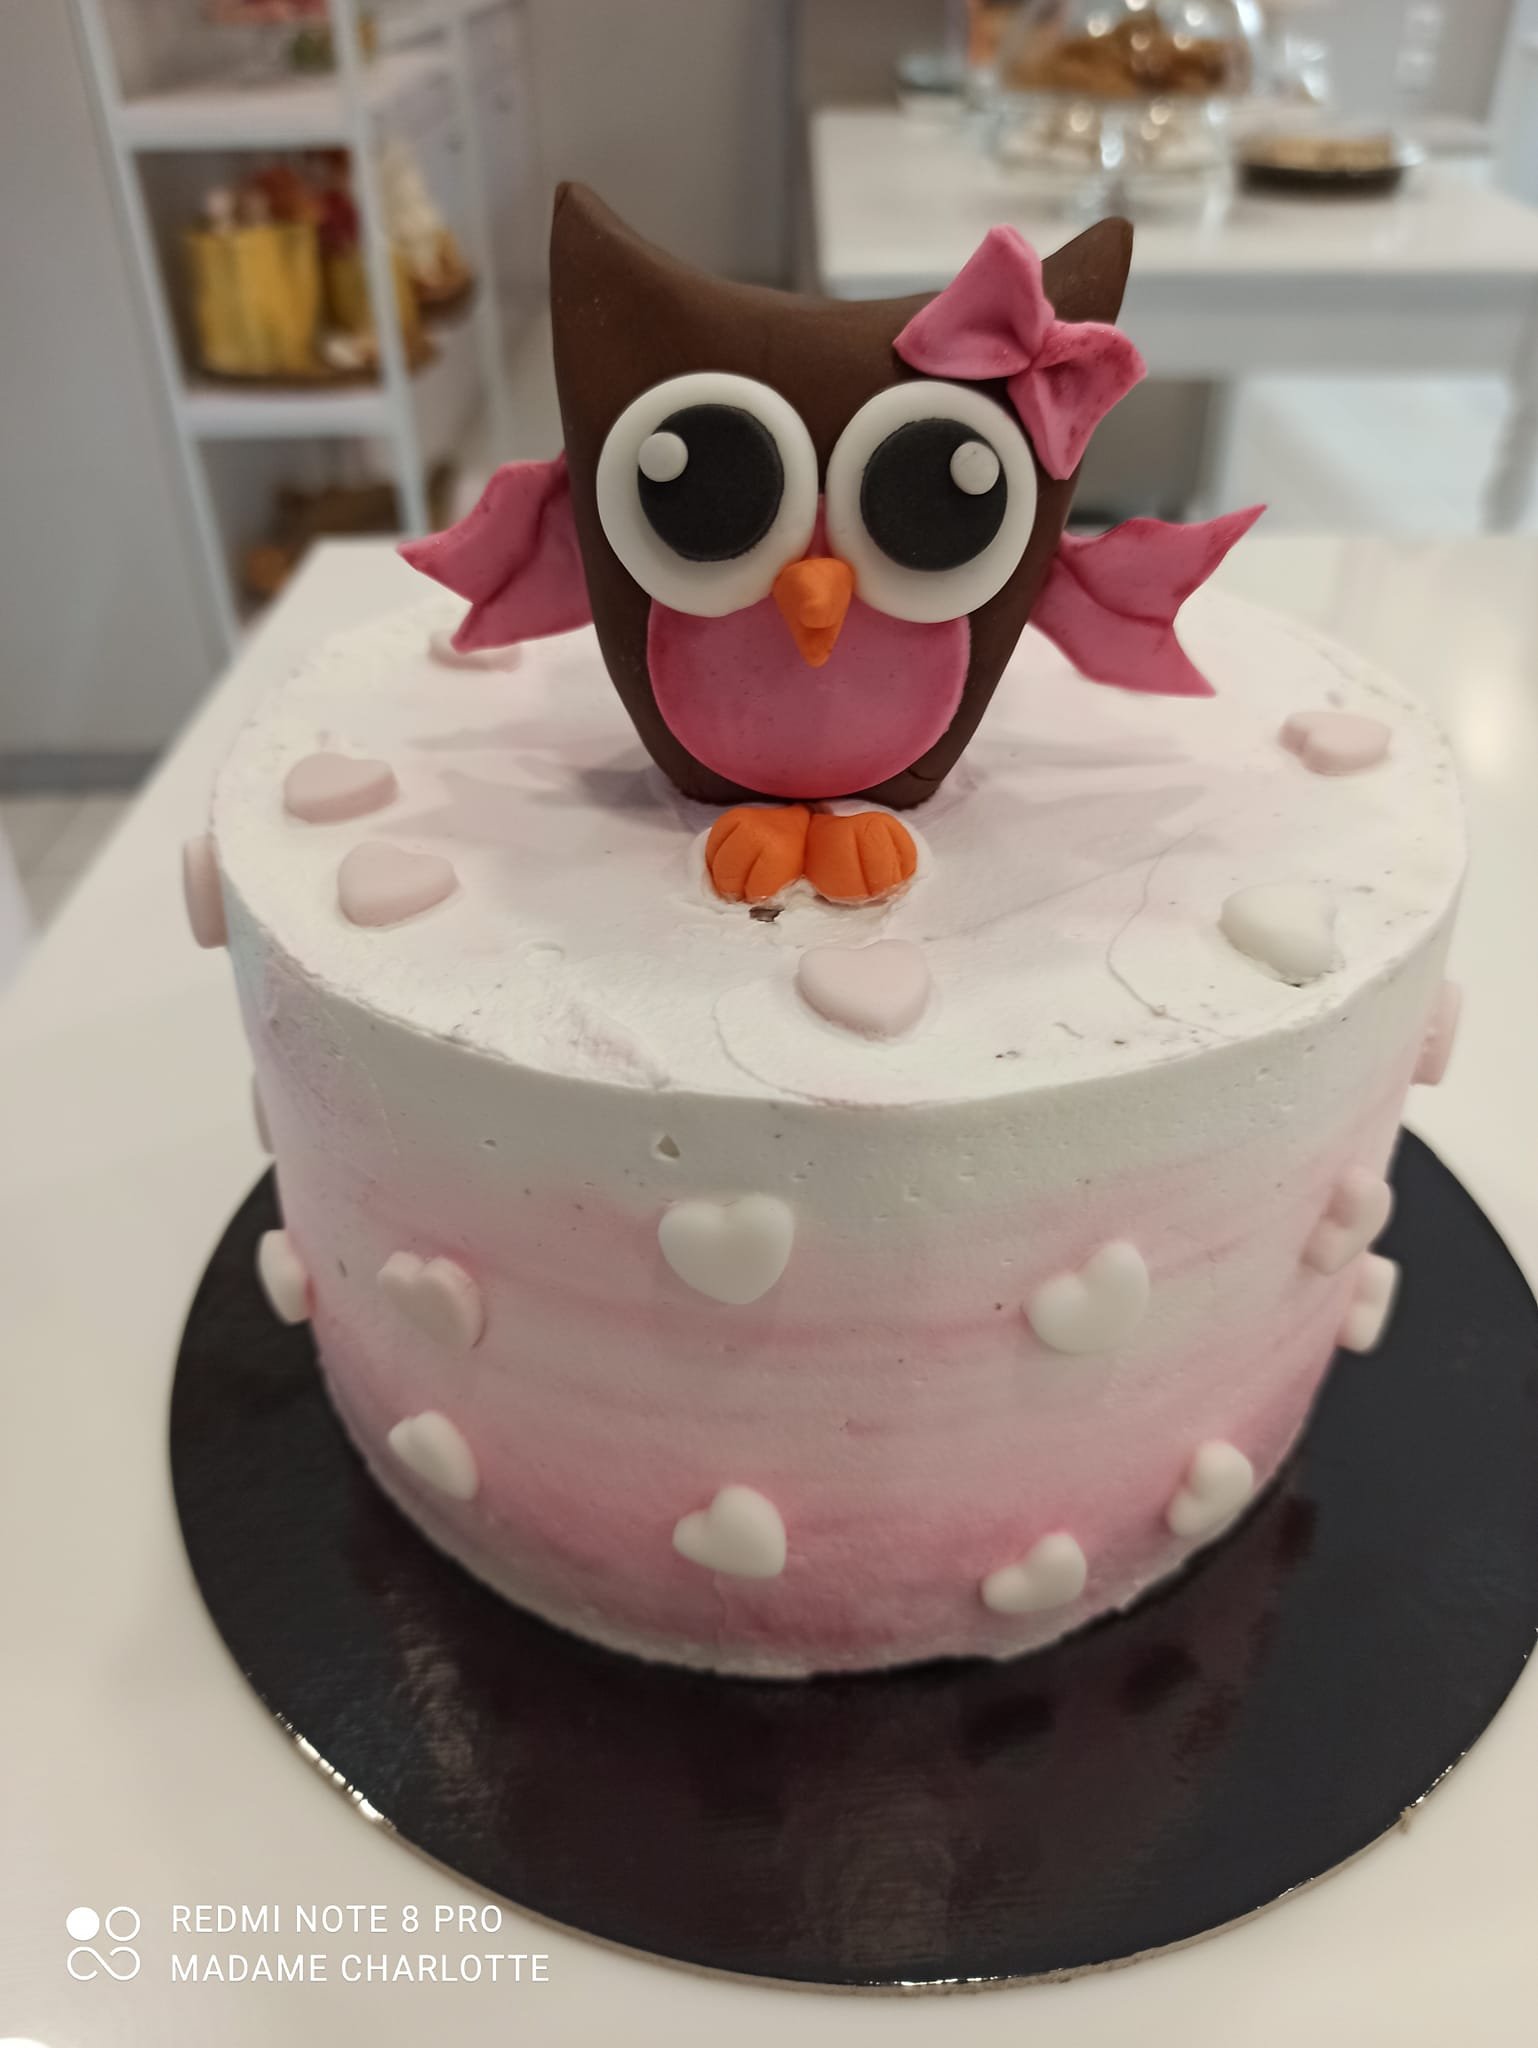 τούρτα χωρίς ζαχαρόπαστα κουκουβάγια owl themed cake, ζαχαροπλαστείο Καλαμάτα madame charlotte, birthday wedding party cakes 2d 3d kalamata